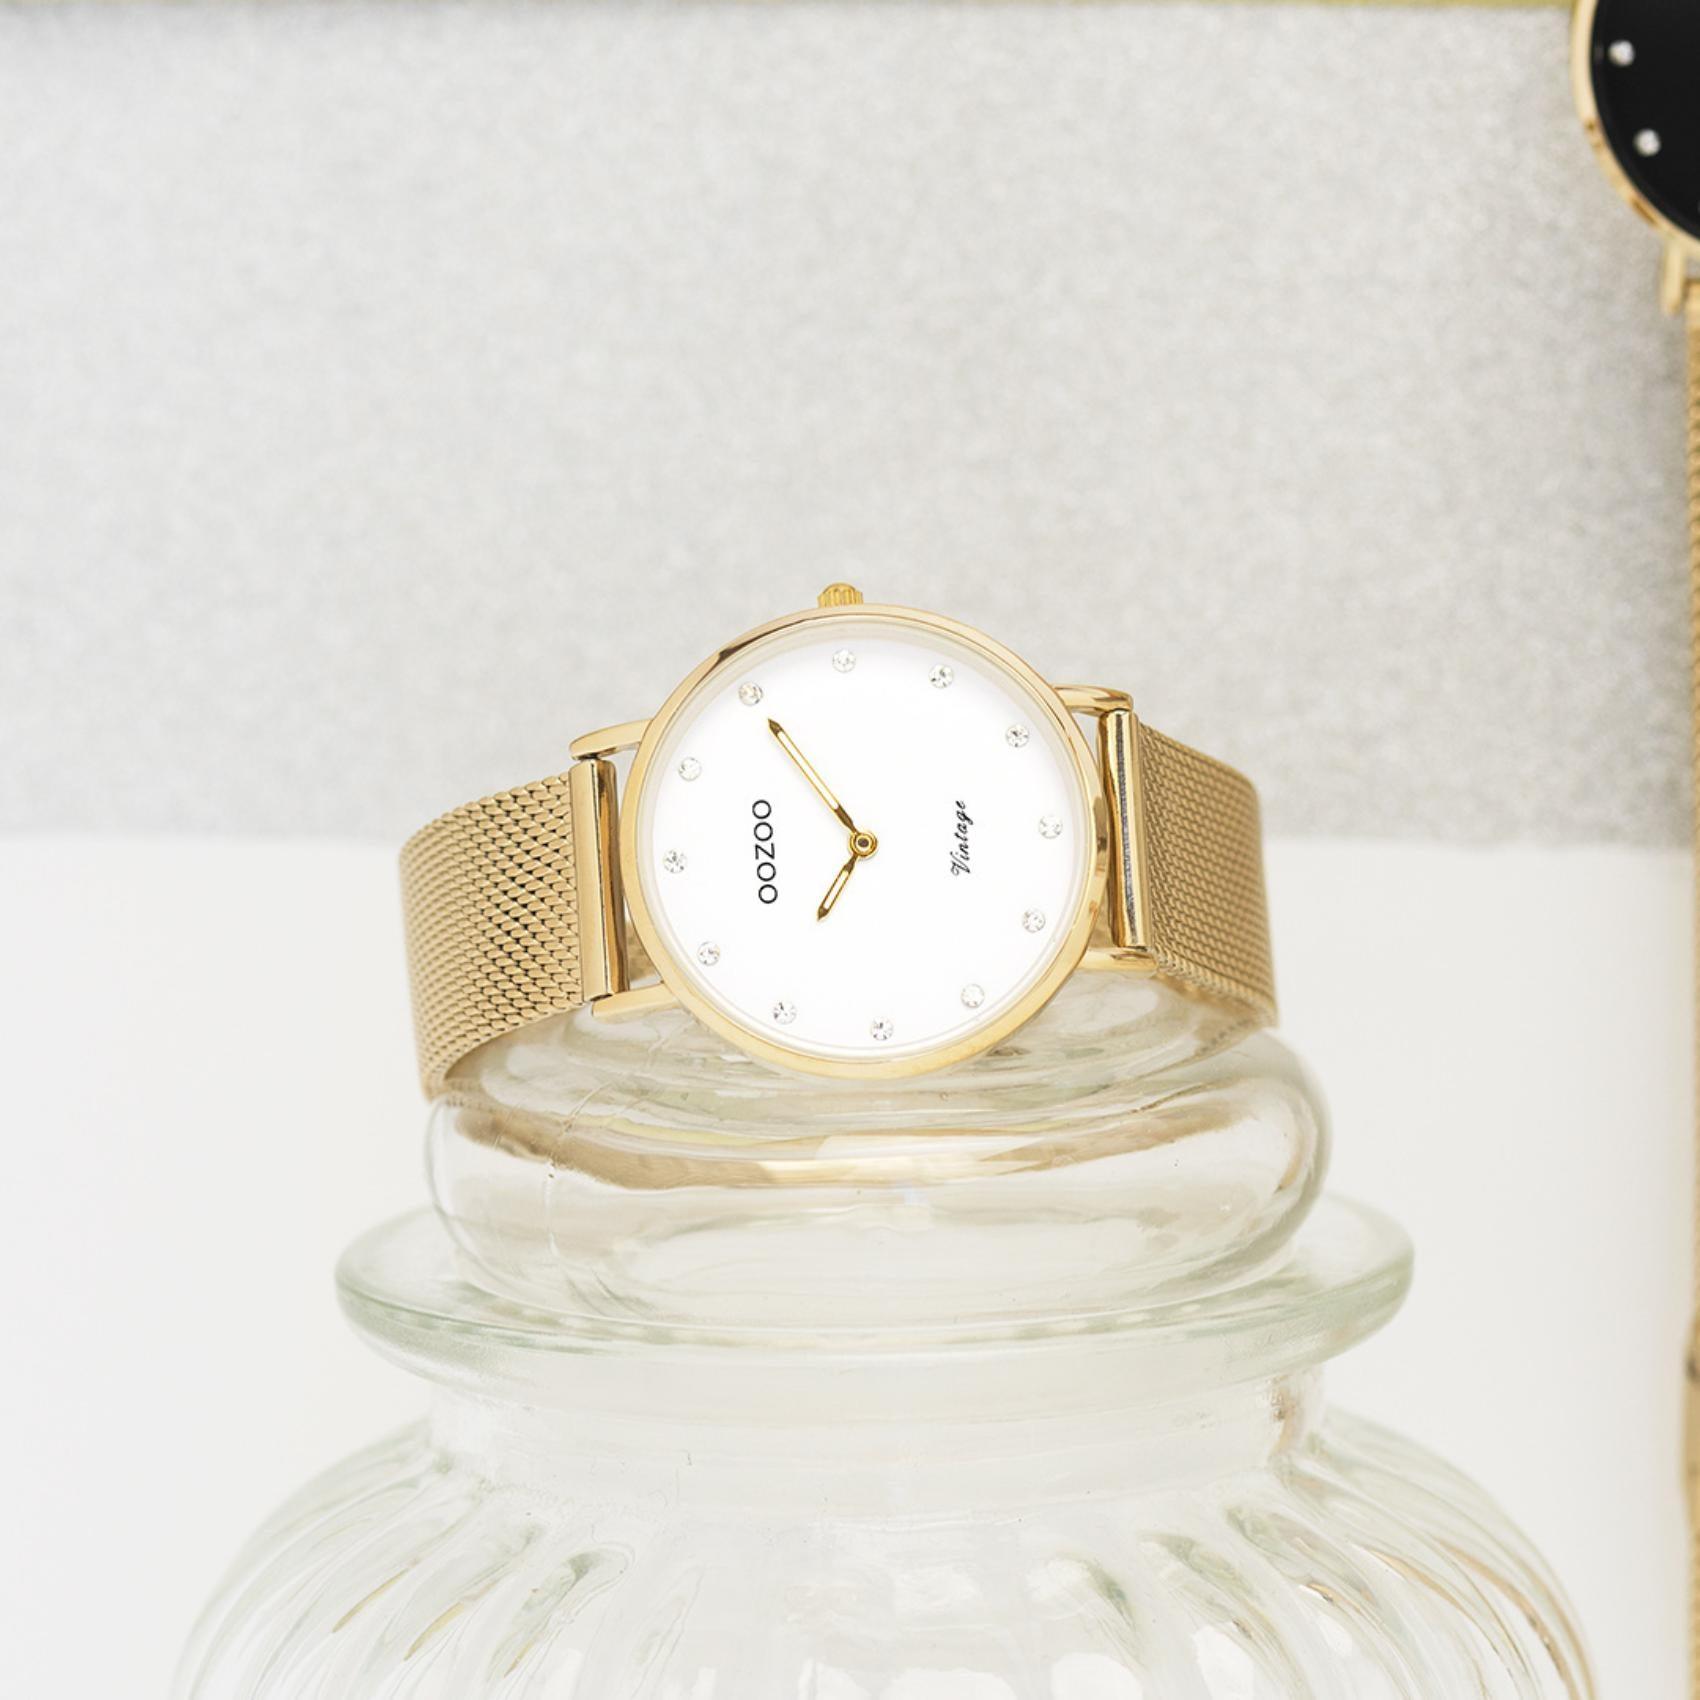 Στρογγυλό ρολόι Oozoo Vintage C20241 με χρυσό ατσάλινο μπρασελέ,άσπρο καντράν με ζιργκόν διαμέτρου 32mm και μηχανισμό μπαταρίας quartz.